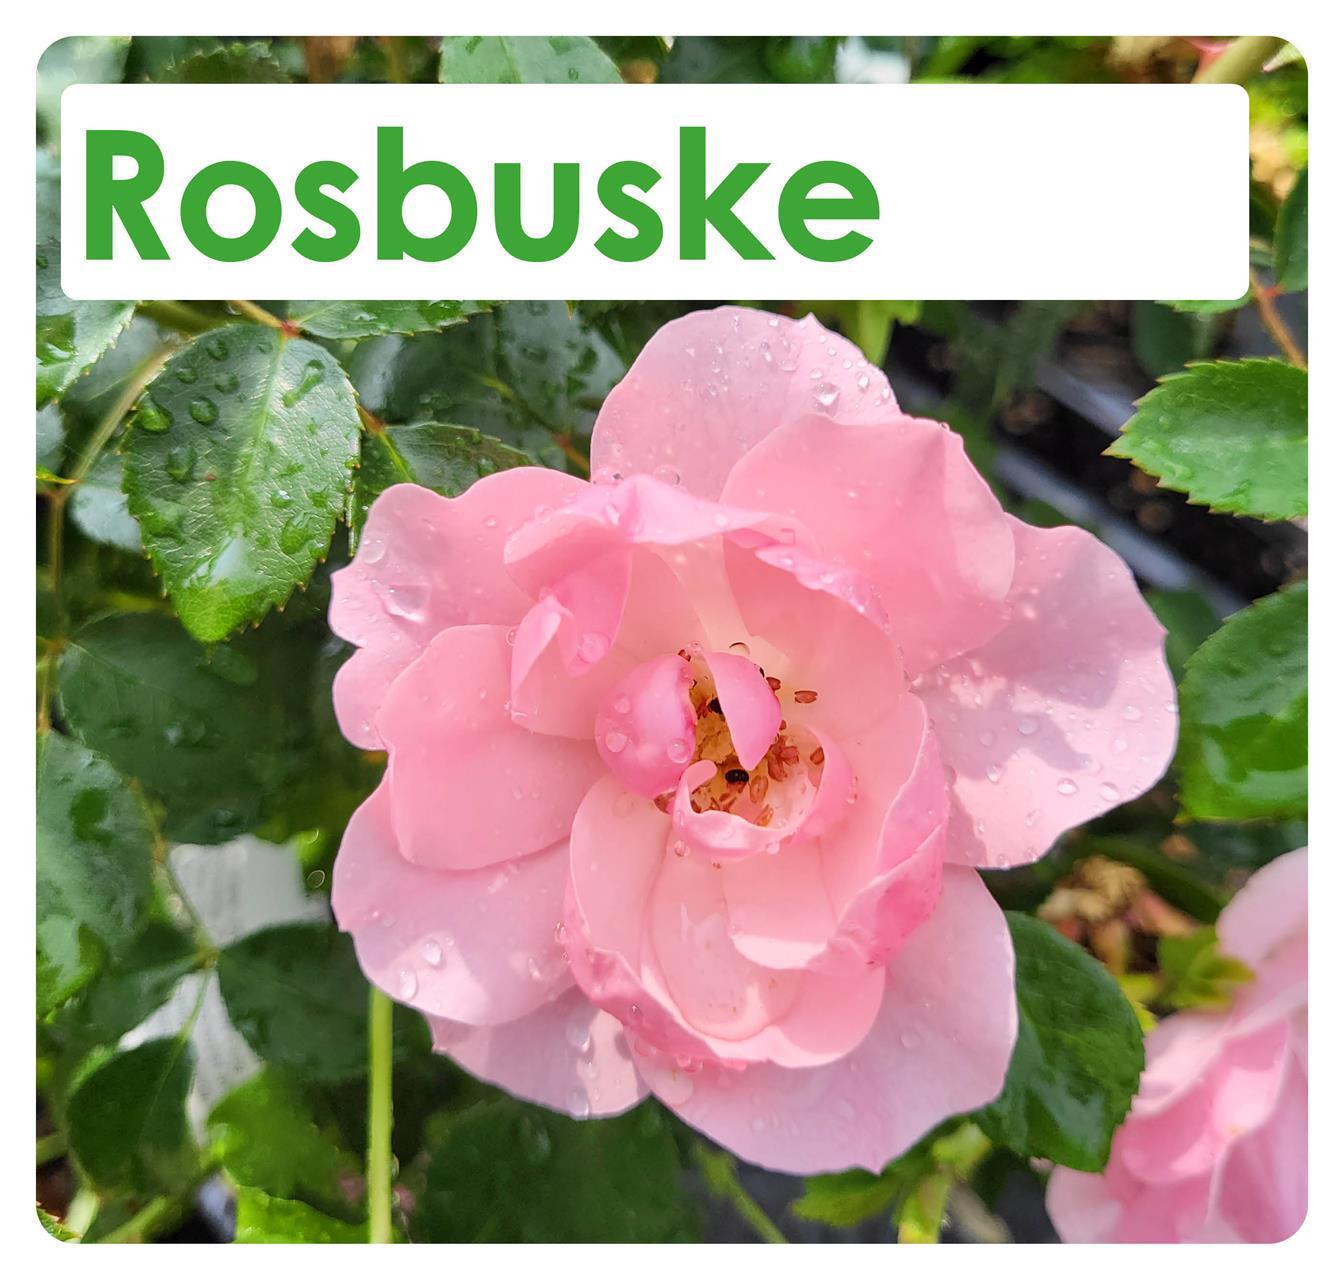 Rosbuske